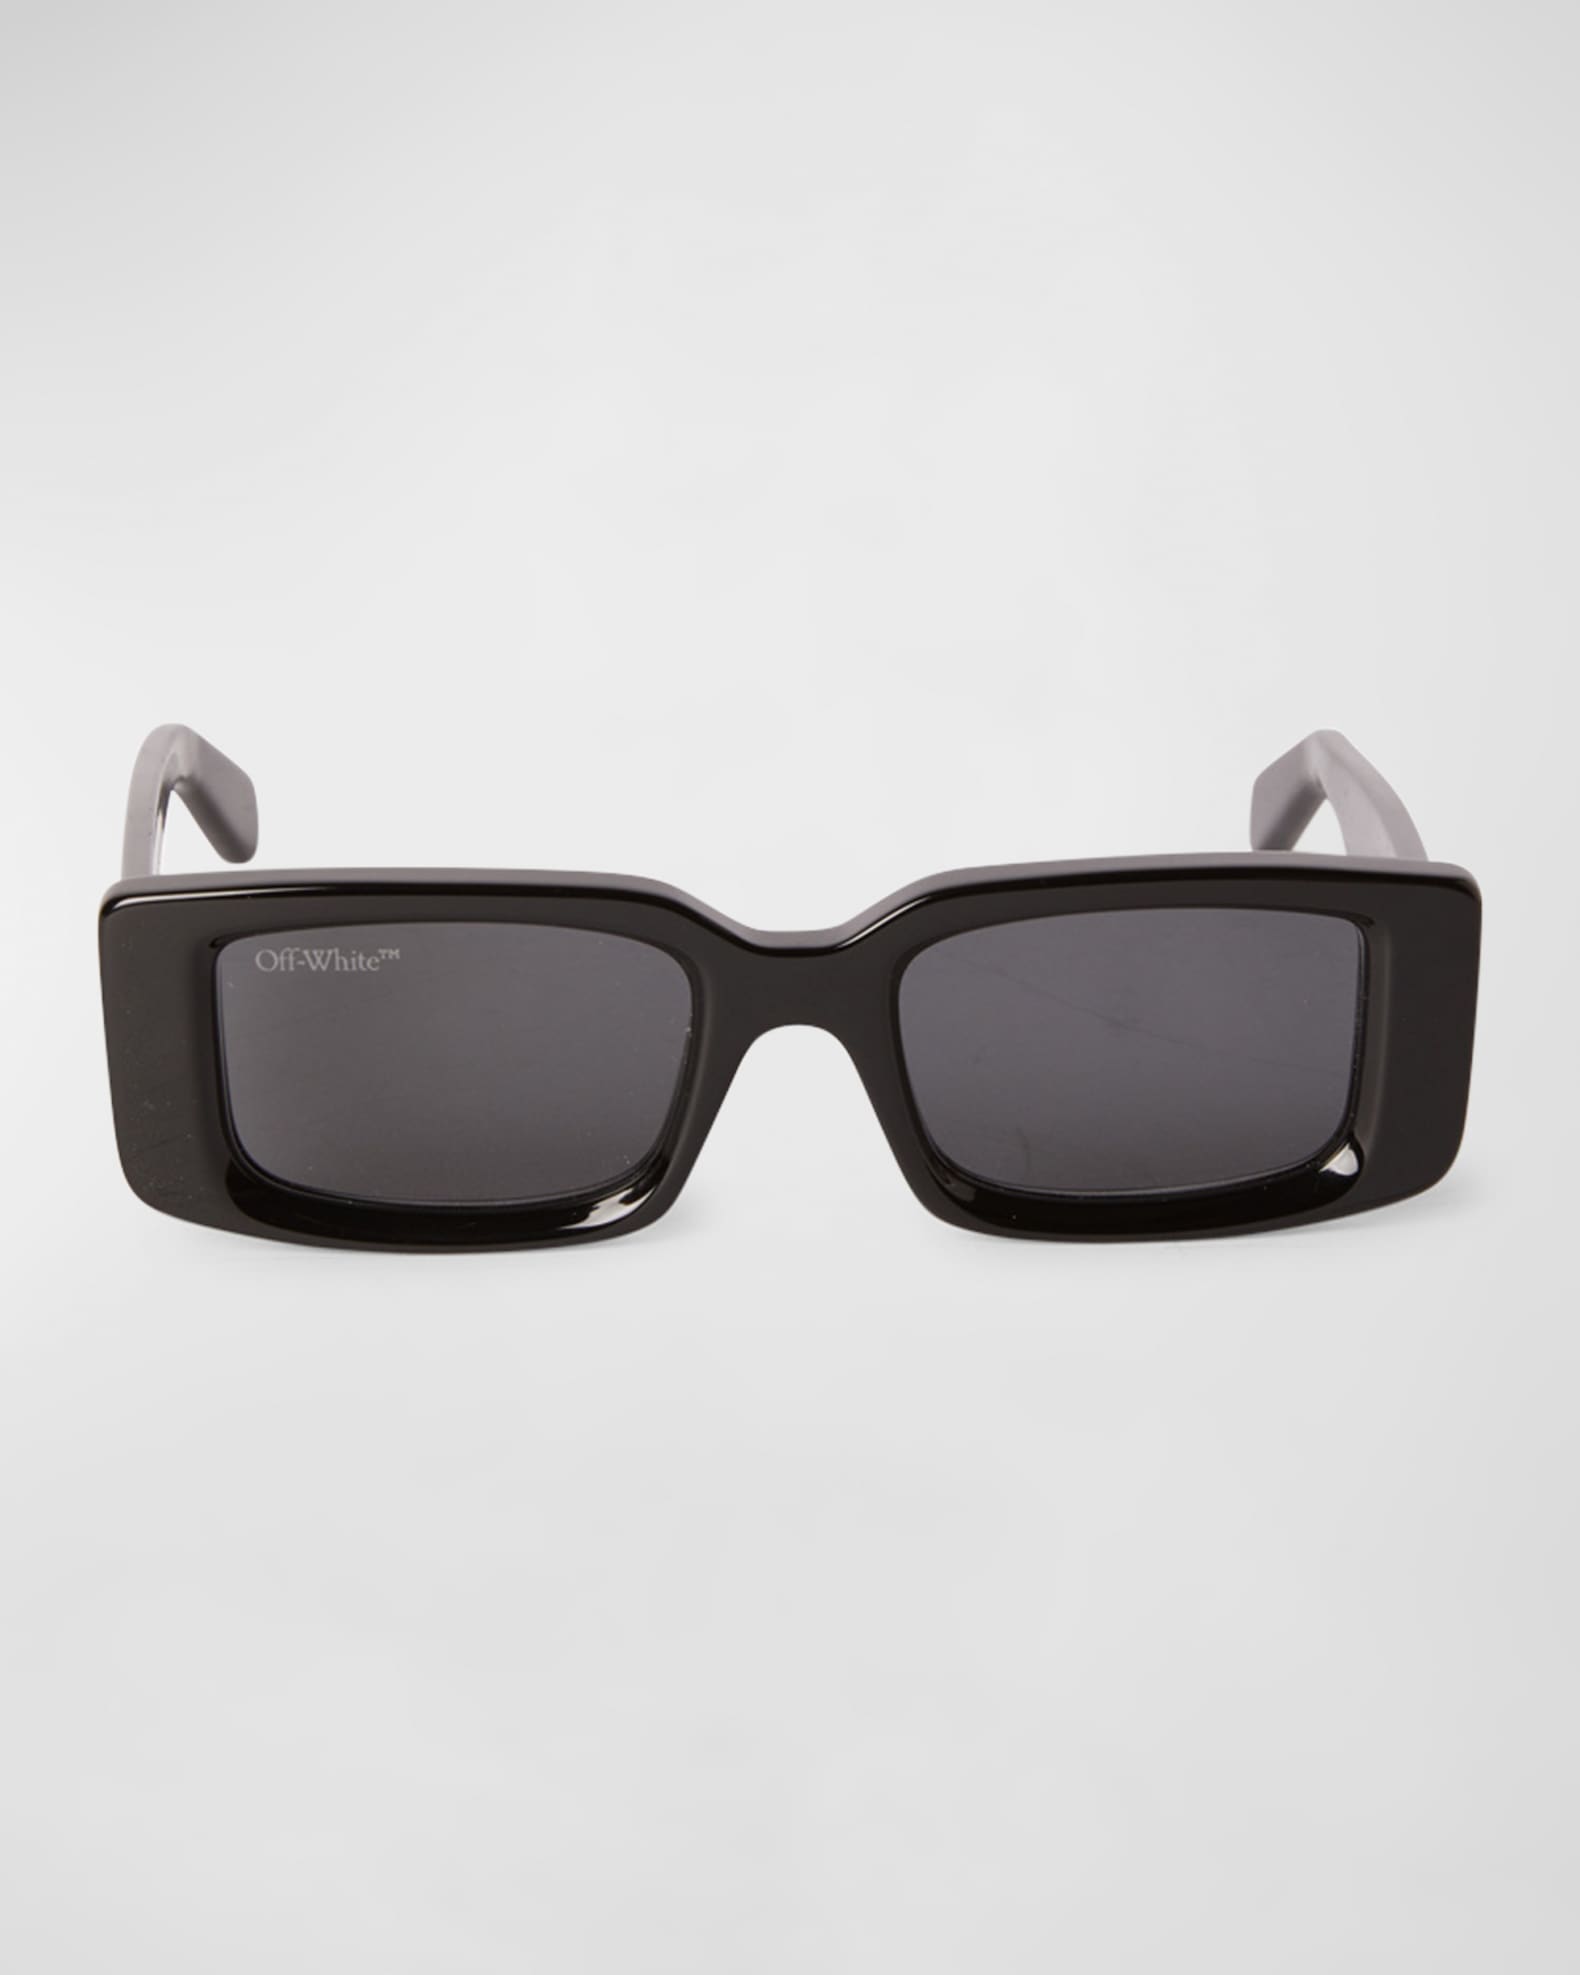 Off-White c/o Virgil Abloh Virgil Square Frame Sunglasses in Black